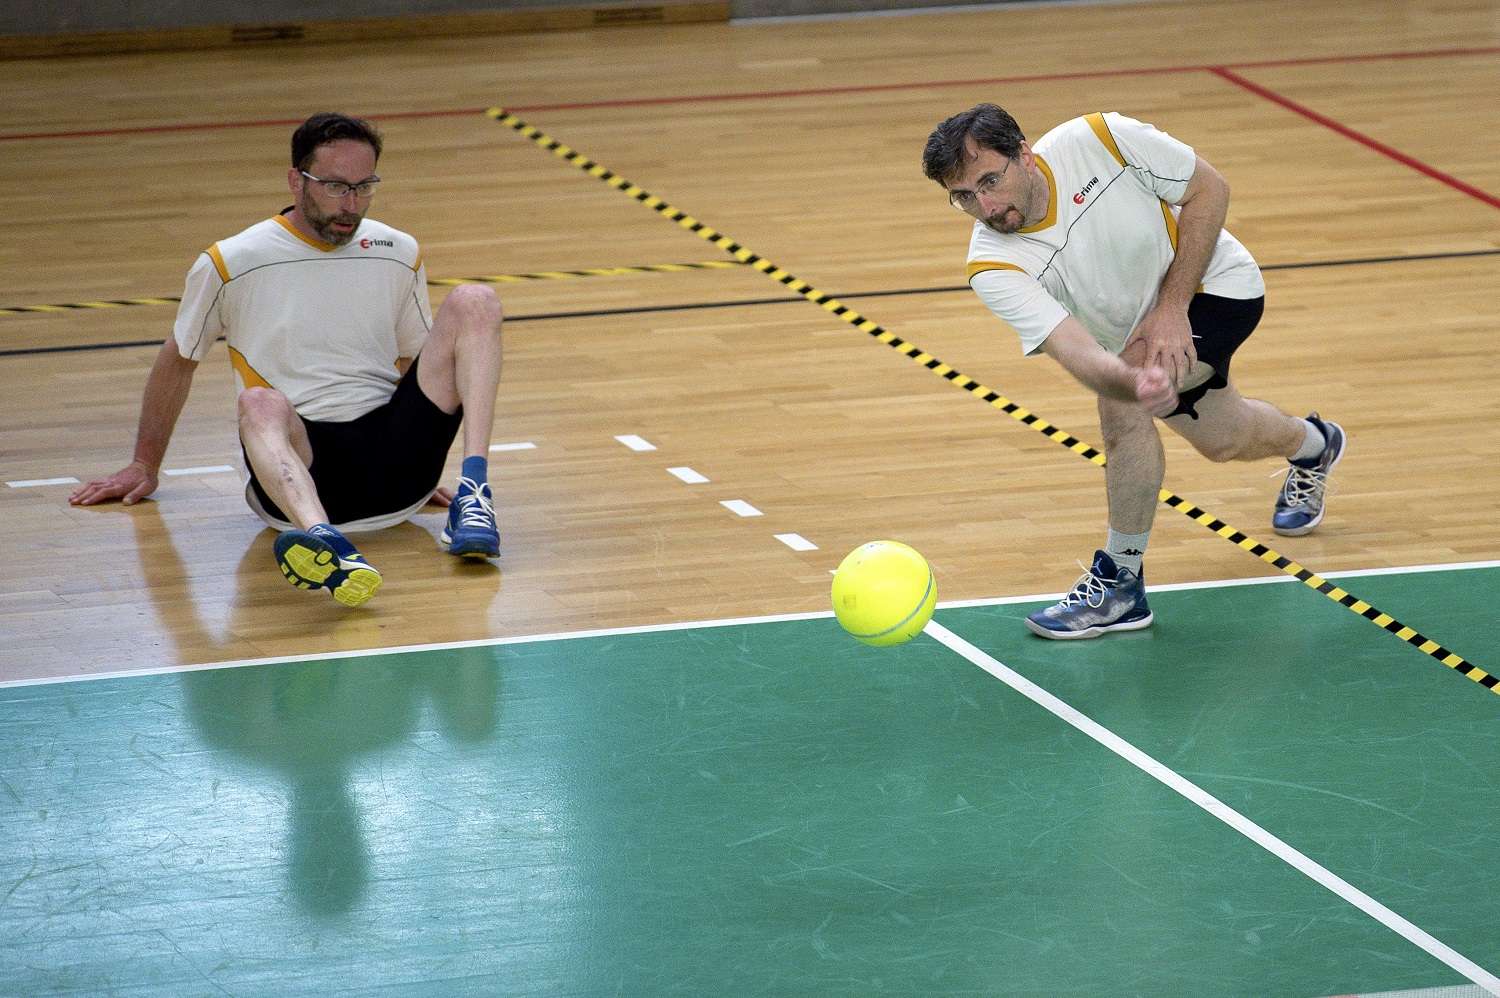 Zwei Prellballspieler in weißen Shirts im Spieleinsatz, der eine hechtet nach dem Ball.